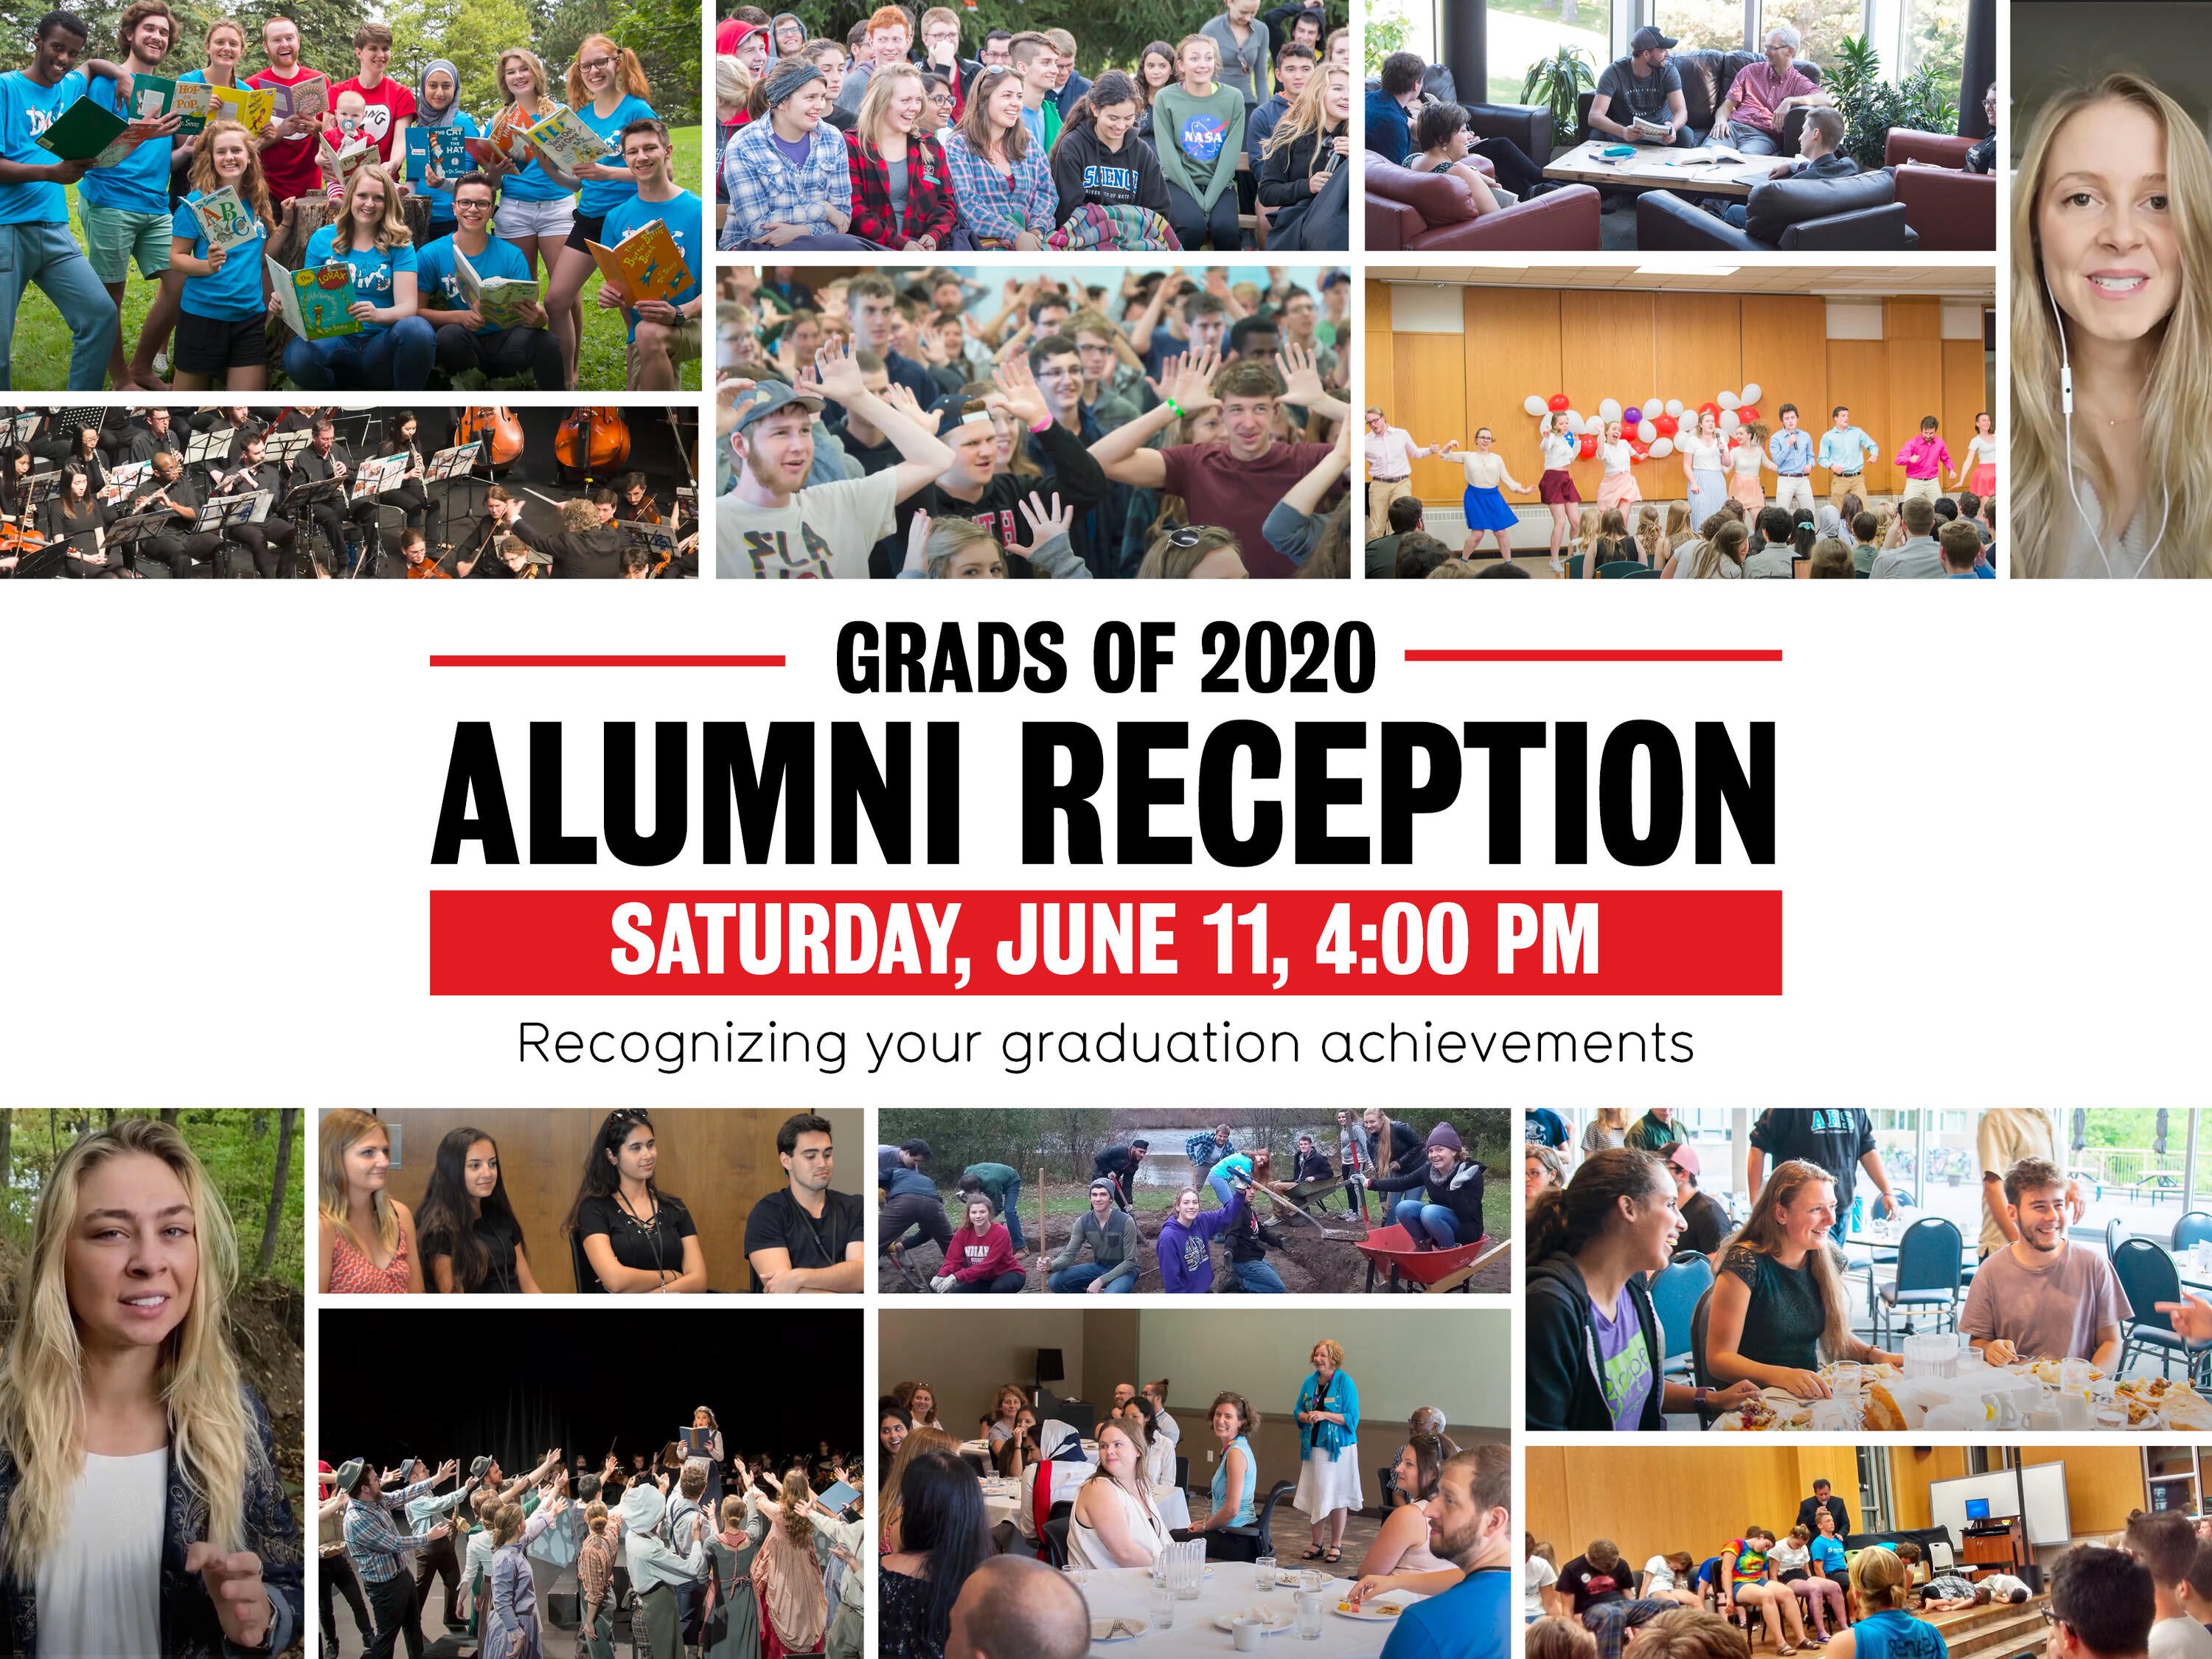 Alumni reception invite 2020 class